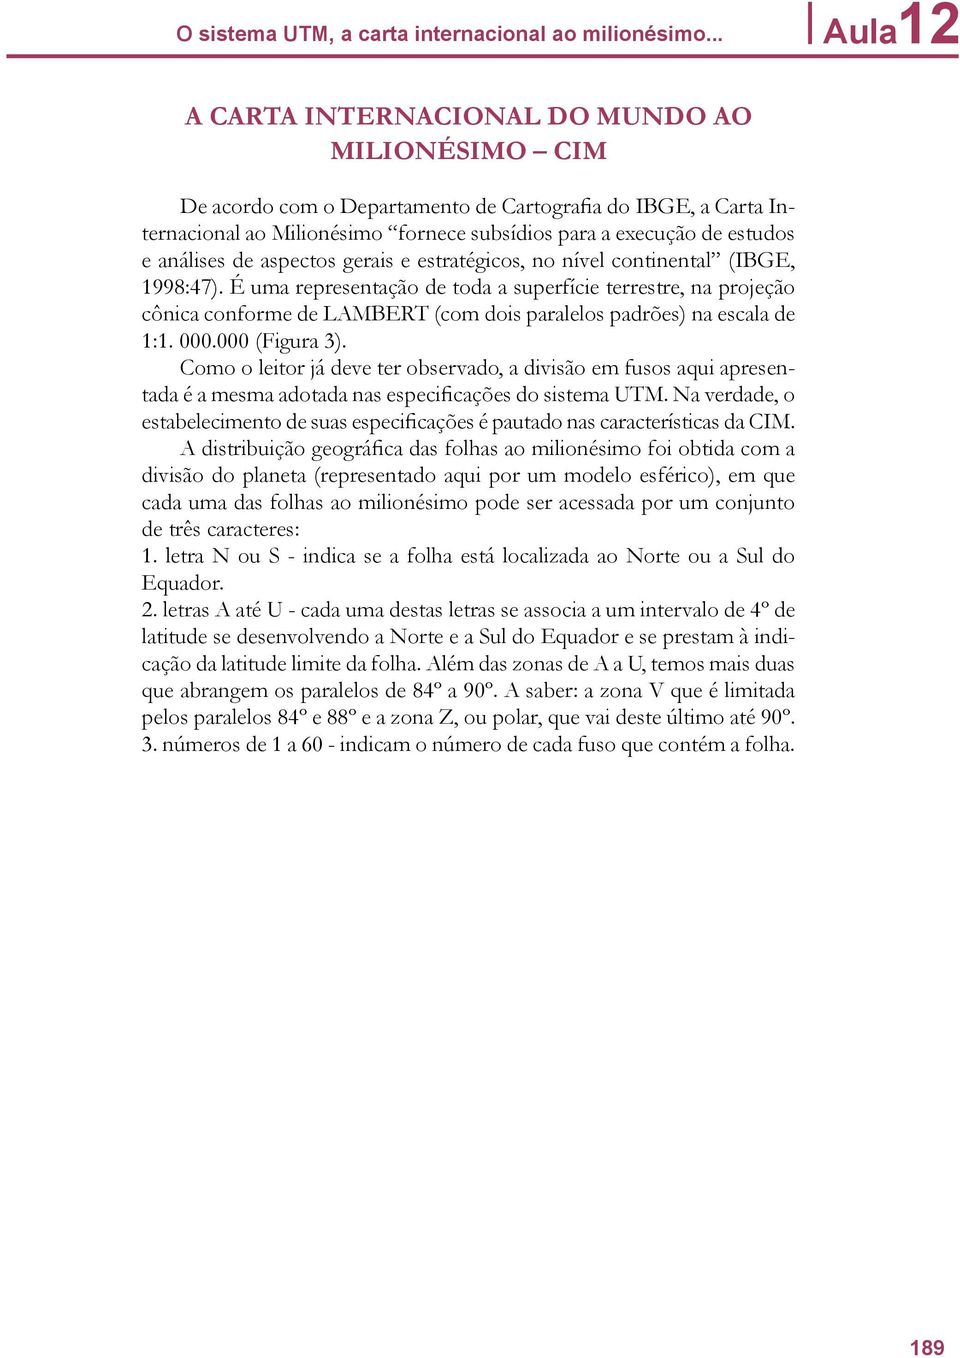 análises de aspectos gerais e estratégicos, no nível continental (IBGE, 1998:47).